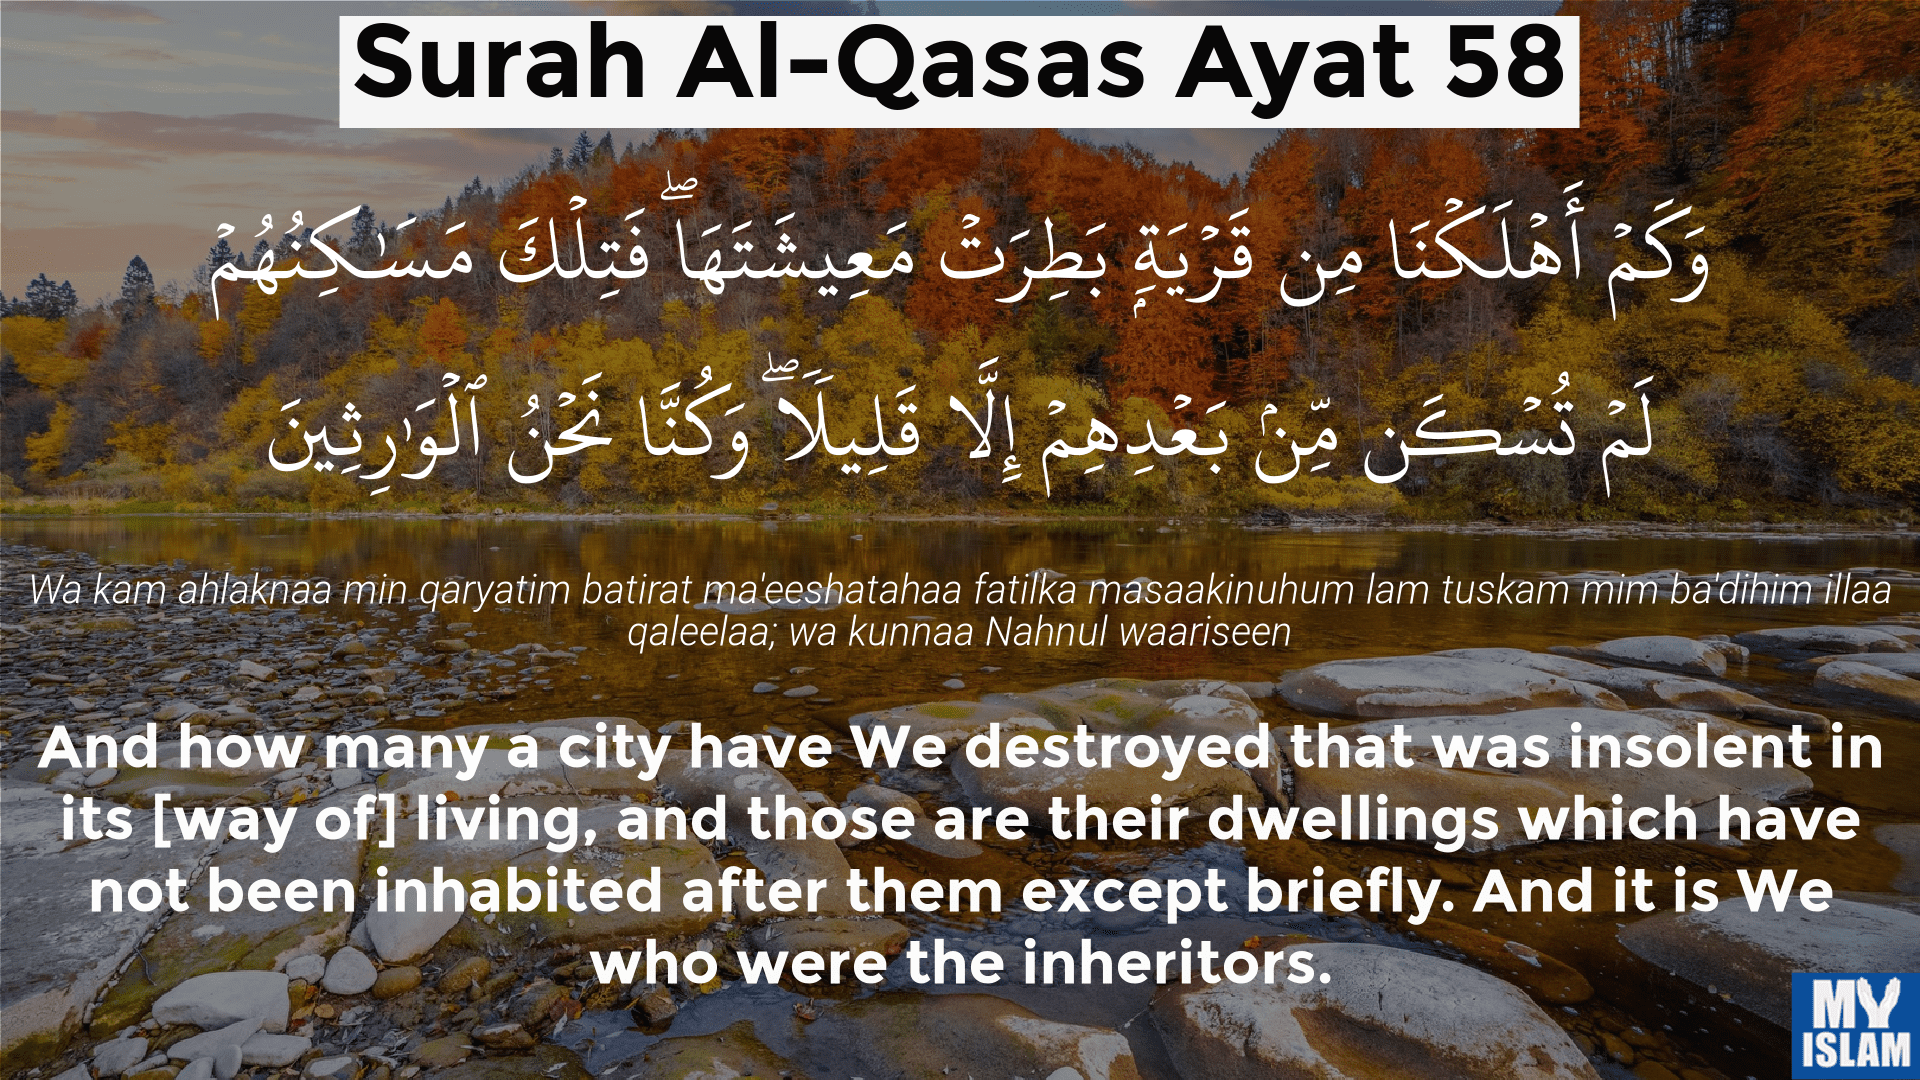 Surah-Al-Qasas-Ayat-58.png